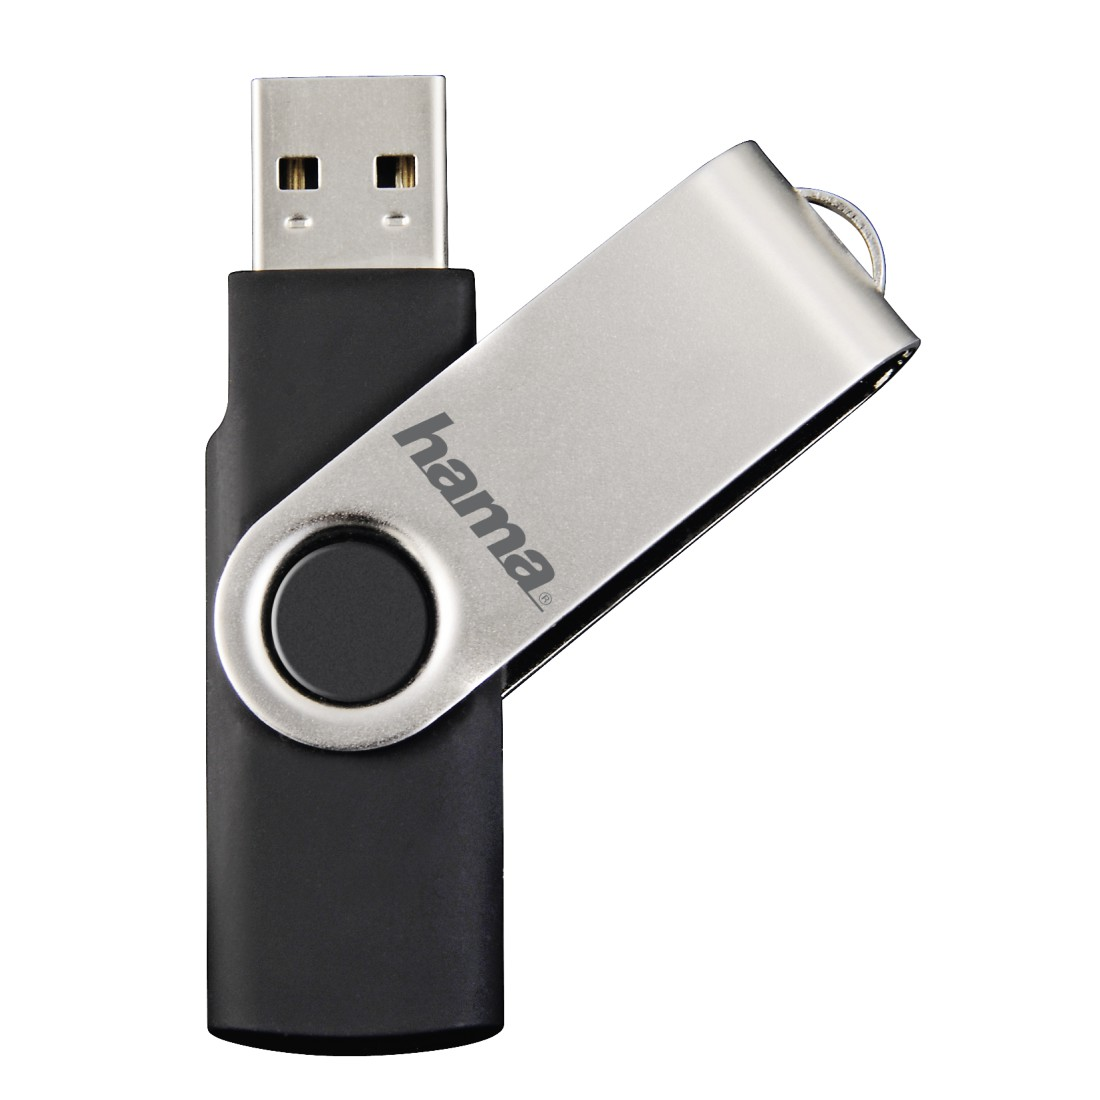 HAMA MB/s, 10 USB-Stick, Rotate Schwarz/Silber GB, 16